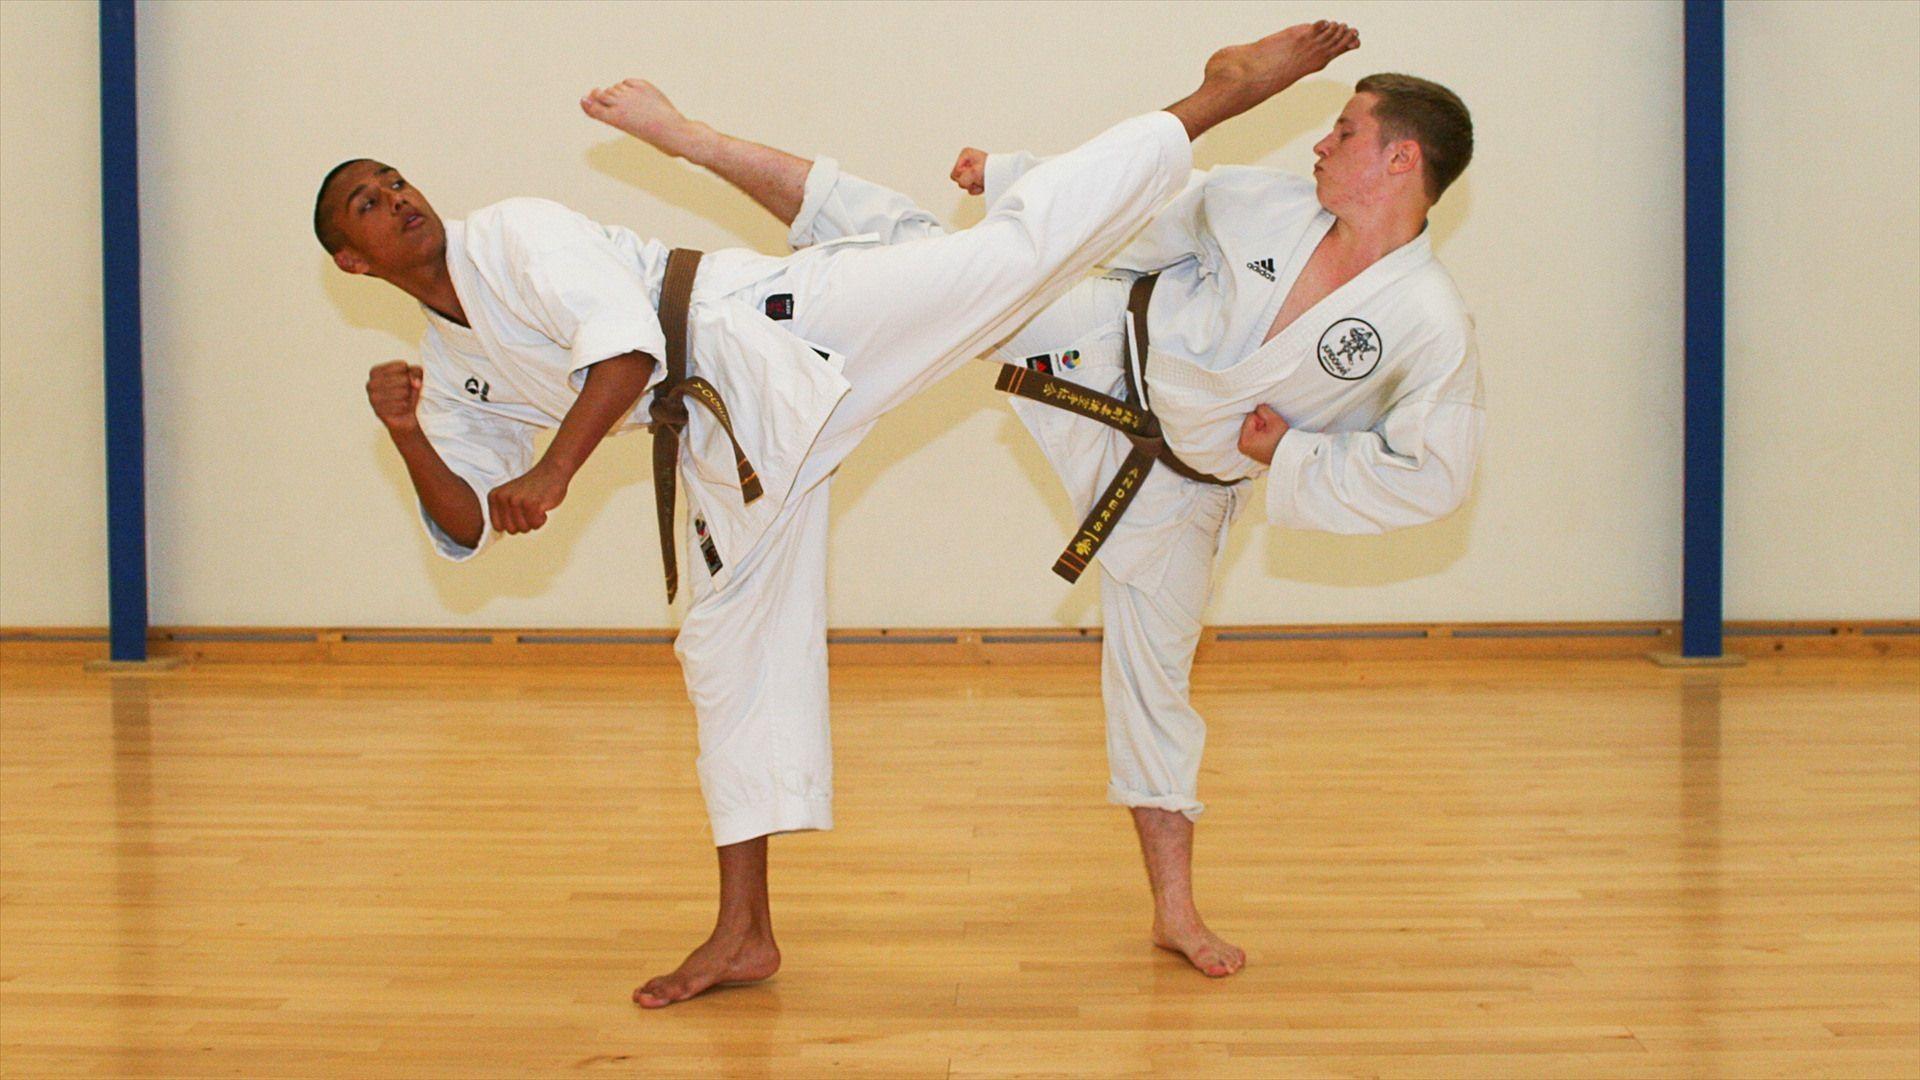 Hình nền 1920x1080 và Hình nền Karate 1920x1080px. Karate và võ đường